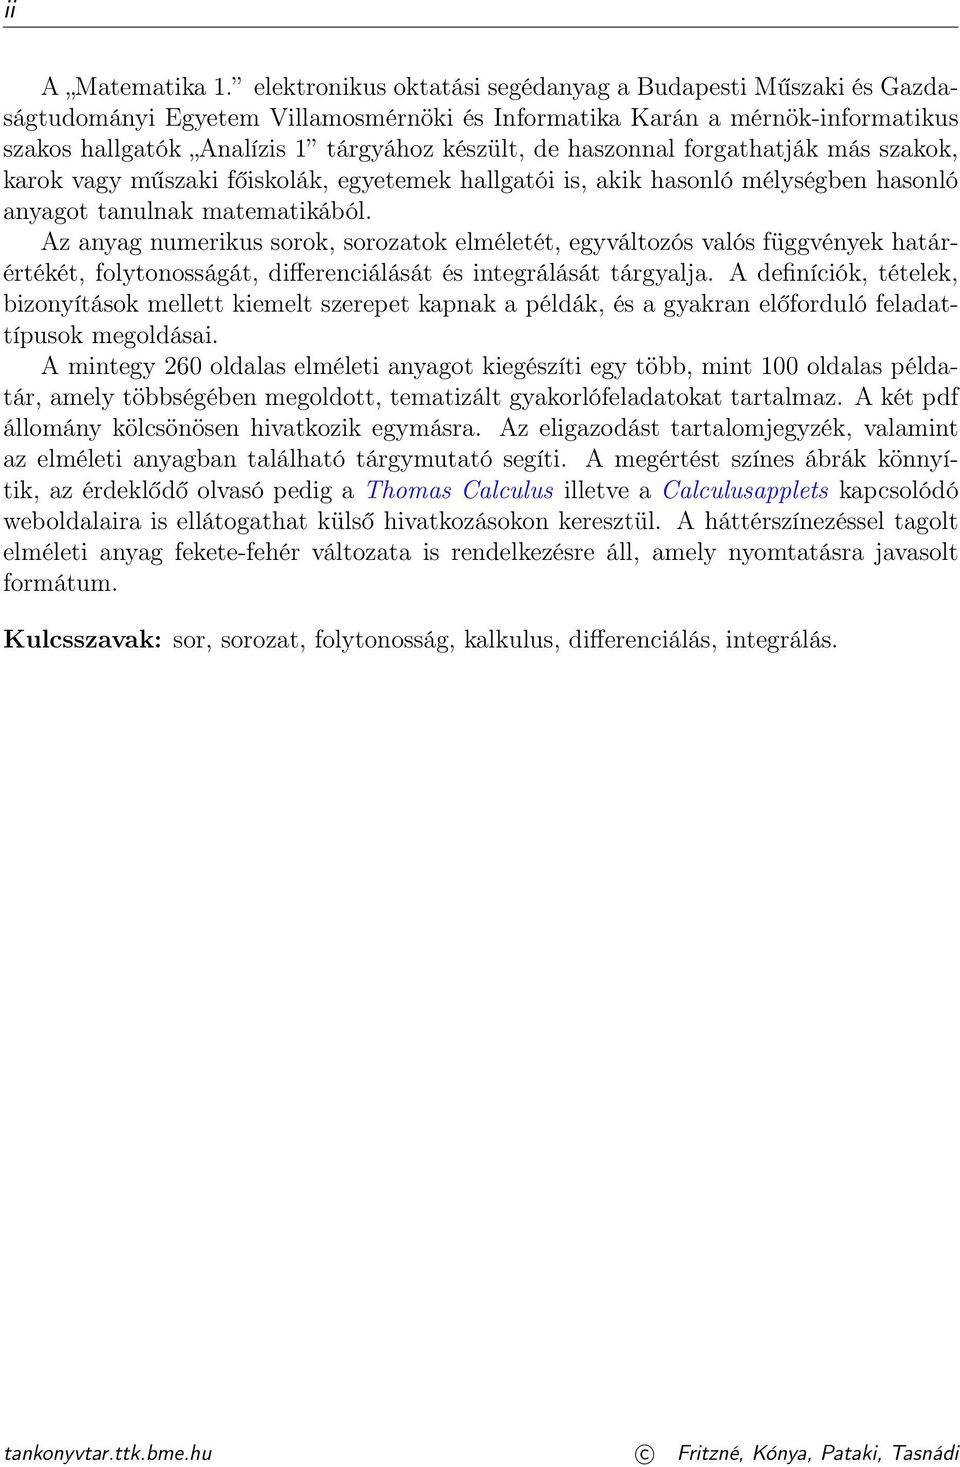 MATEMATIKA 1. GYAKORLATOK - PDF Ingyenes letöltés